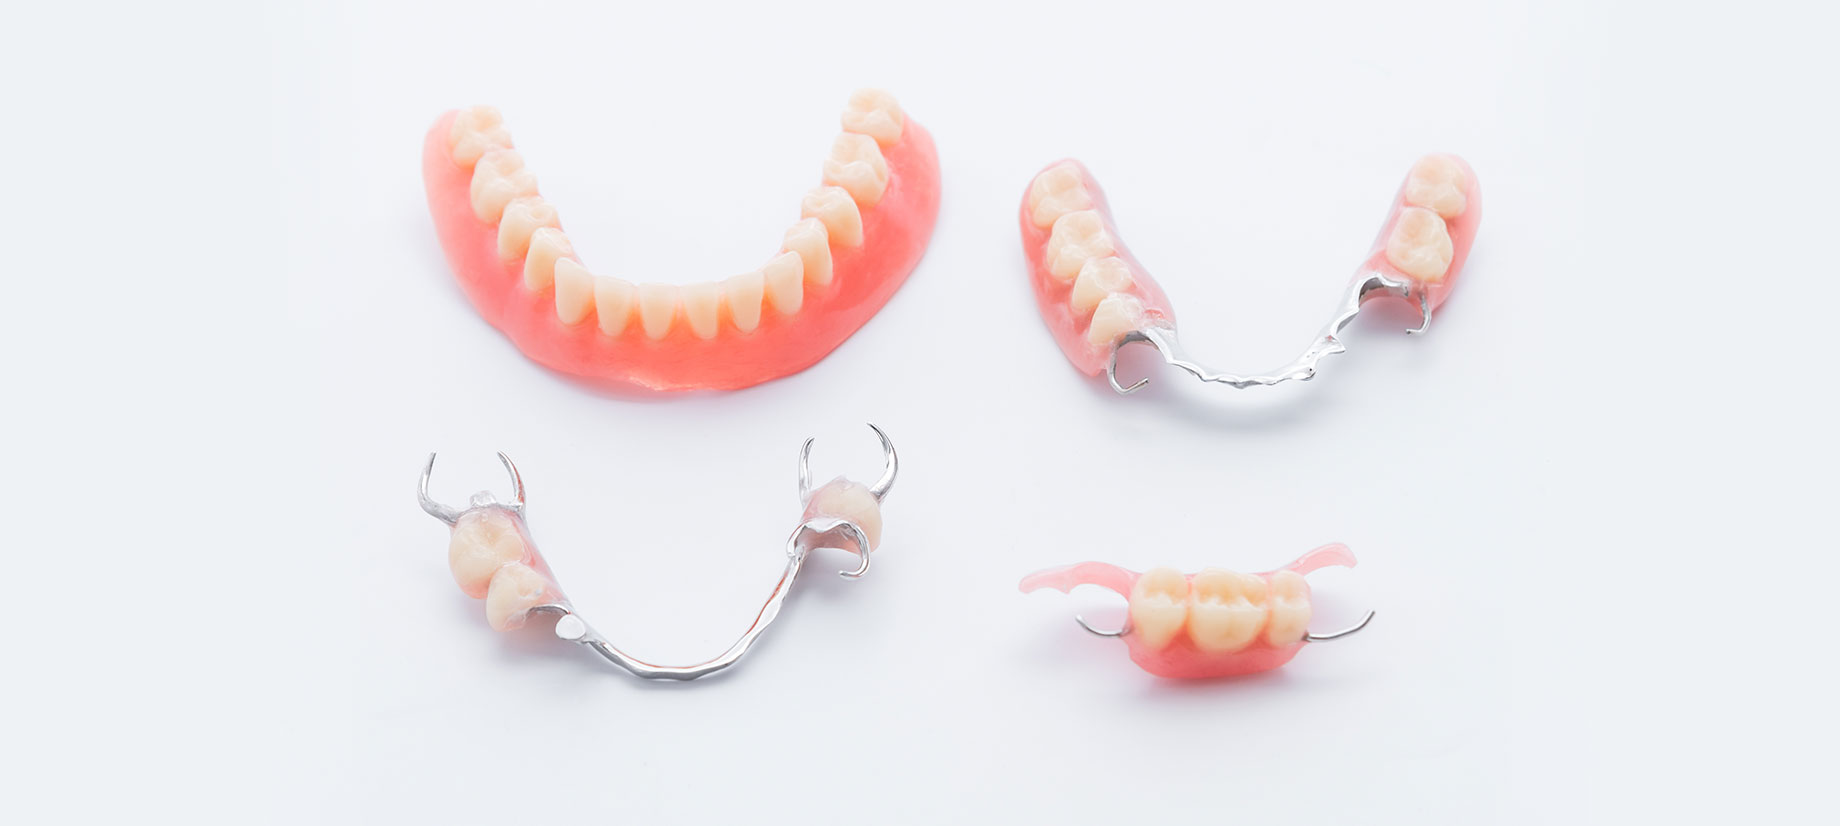 さまざまな種類から患者さまに合った入れ歯をお選びいただけます